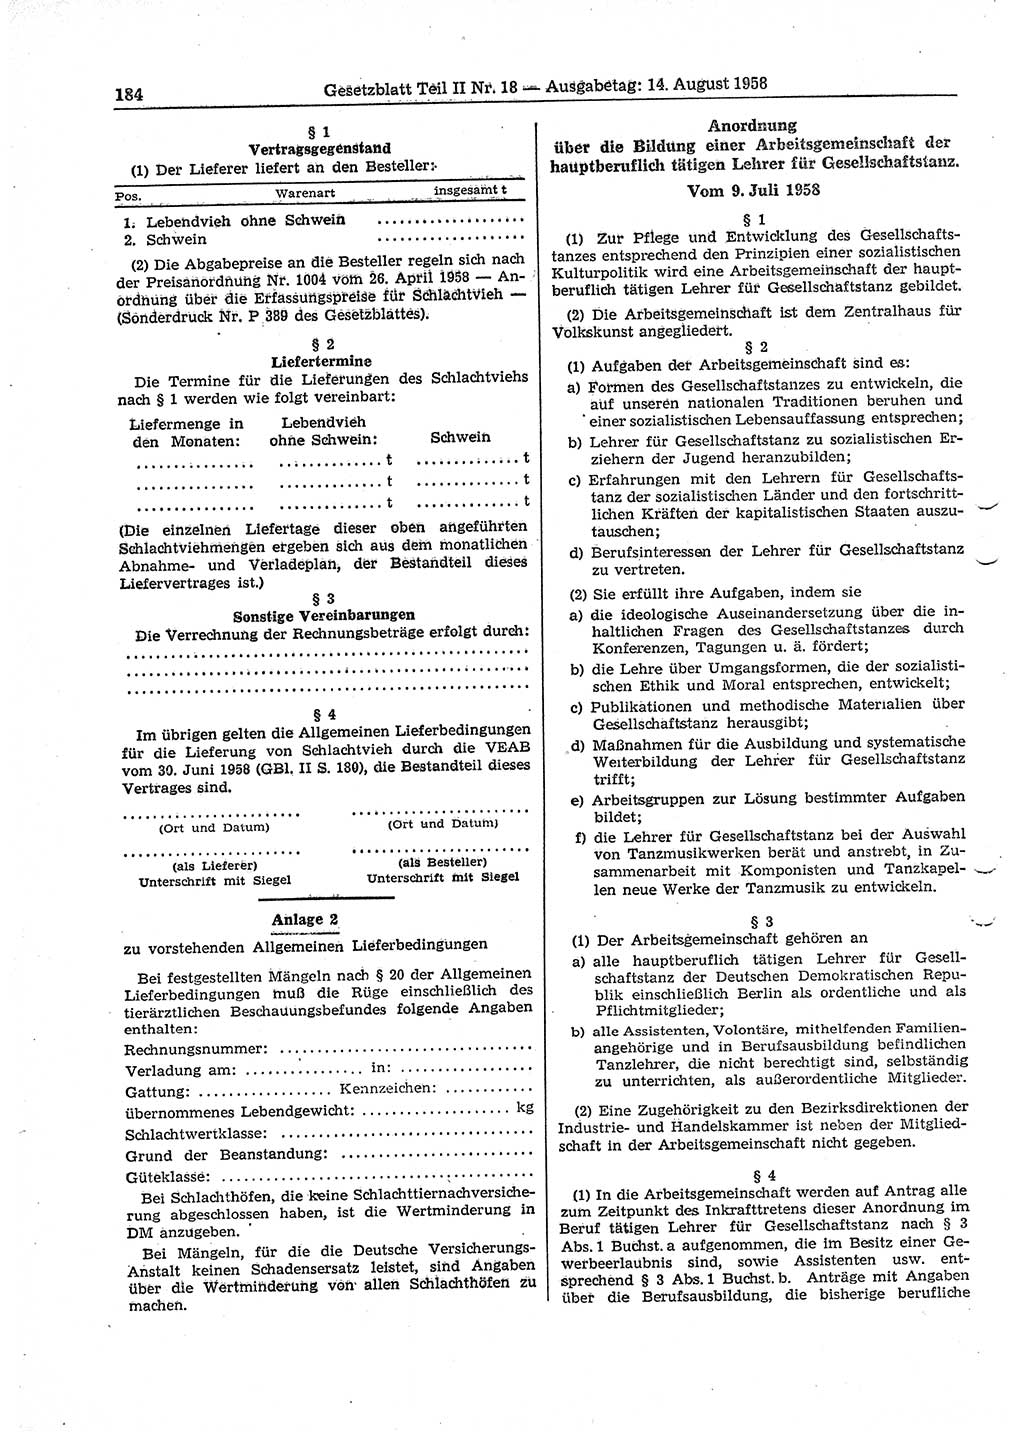 Gesetzblatt (GBl.) der Deutschen Demokratischen Republik (DDR) Teil ⅠⅠ 1958, Seite 184 (GBl. DDR ⅠⅠ 1958, S. 184)